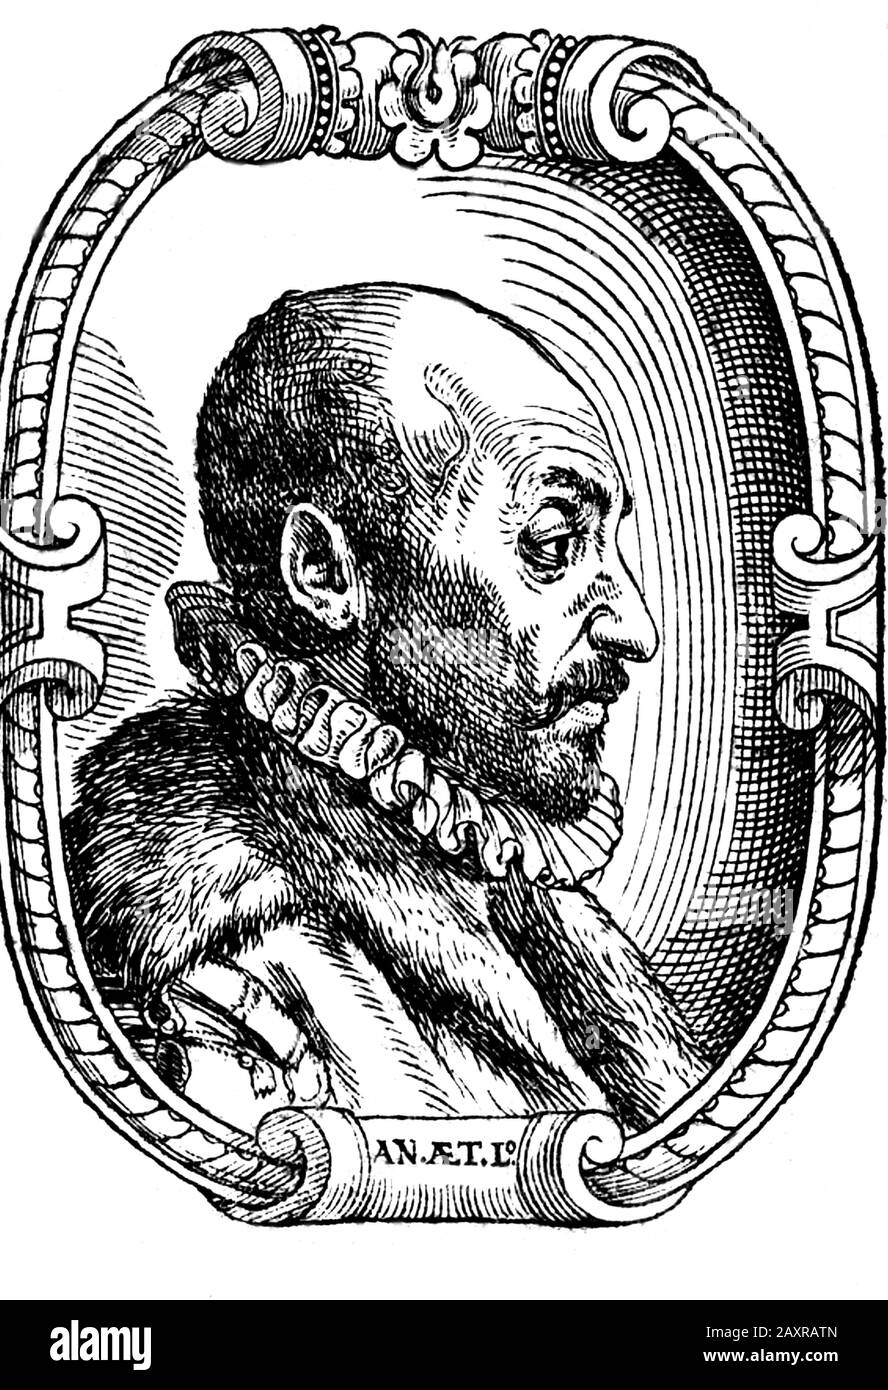 1600 ca , ITALY : The celebrated italian philosopher , polymath , occultist  , dramatist and alchemist GIOVANNI BATTISTA DELLA PORTA ( Vico Equense ,  1535 ca - Napoli, 1615 ). Engraved